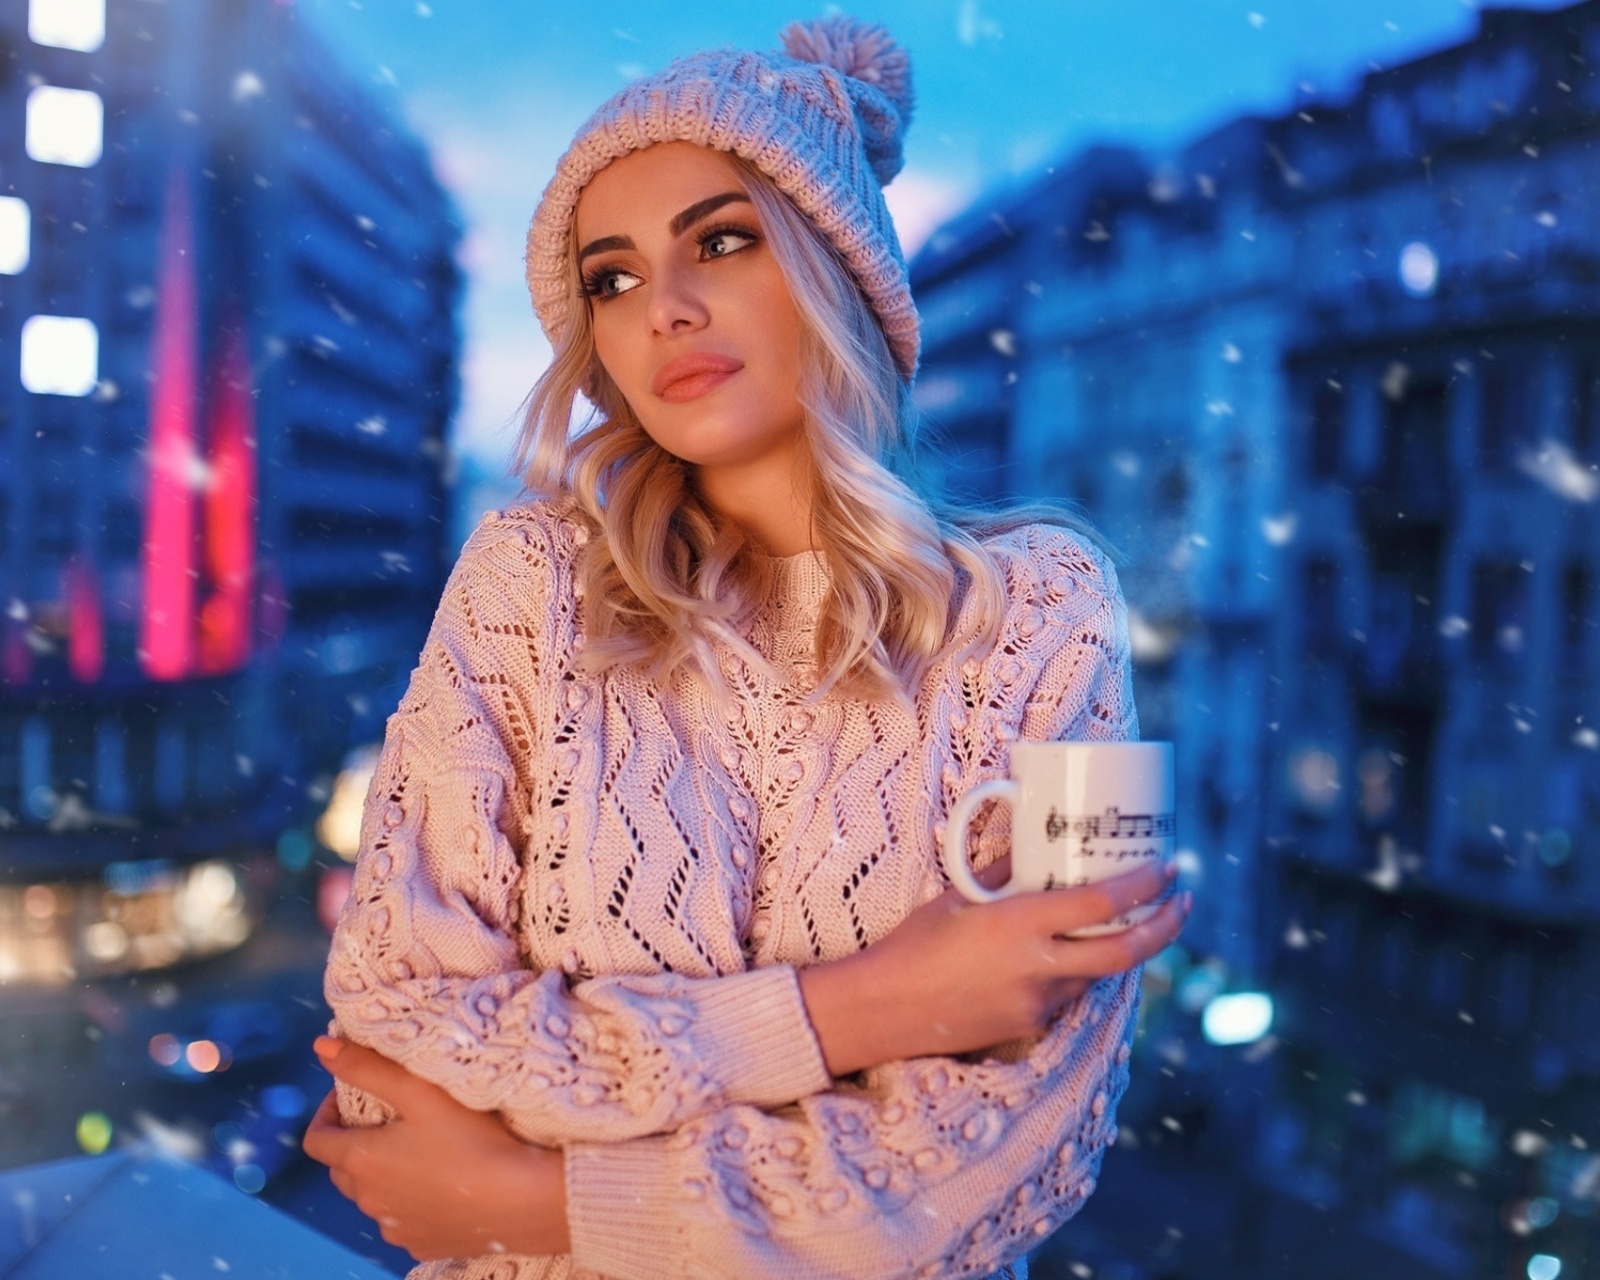 Winter stylish woman screenshot #1 1600x1280